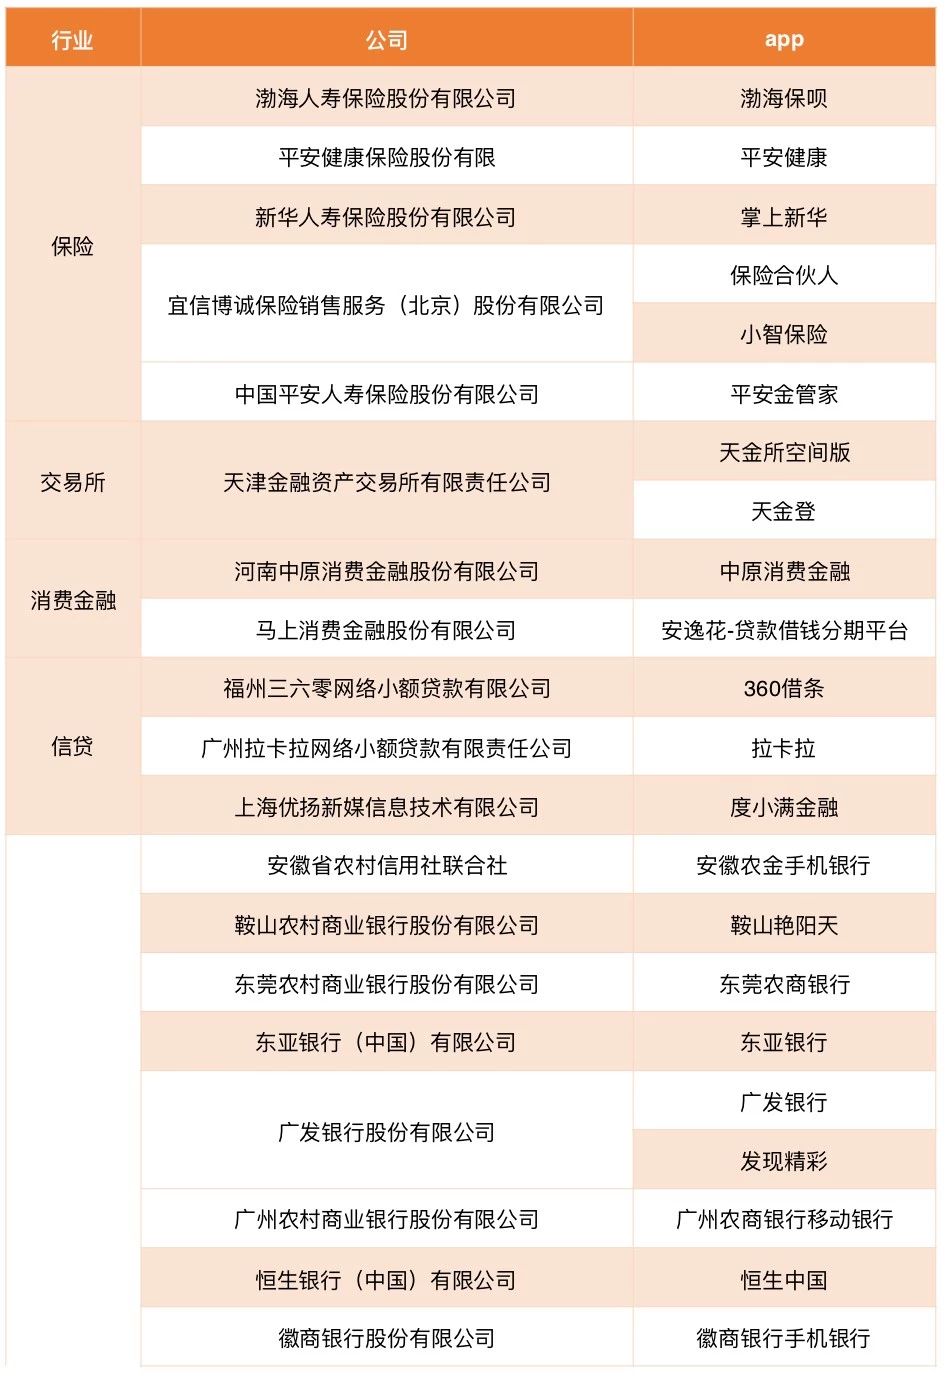 中国互金协会：53家公司申请金融App备案，其中信贷3家、消金2家